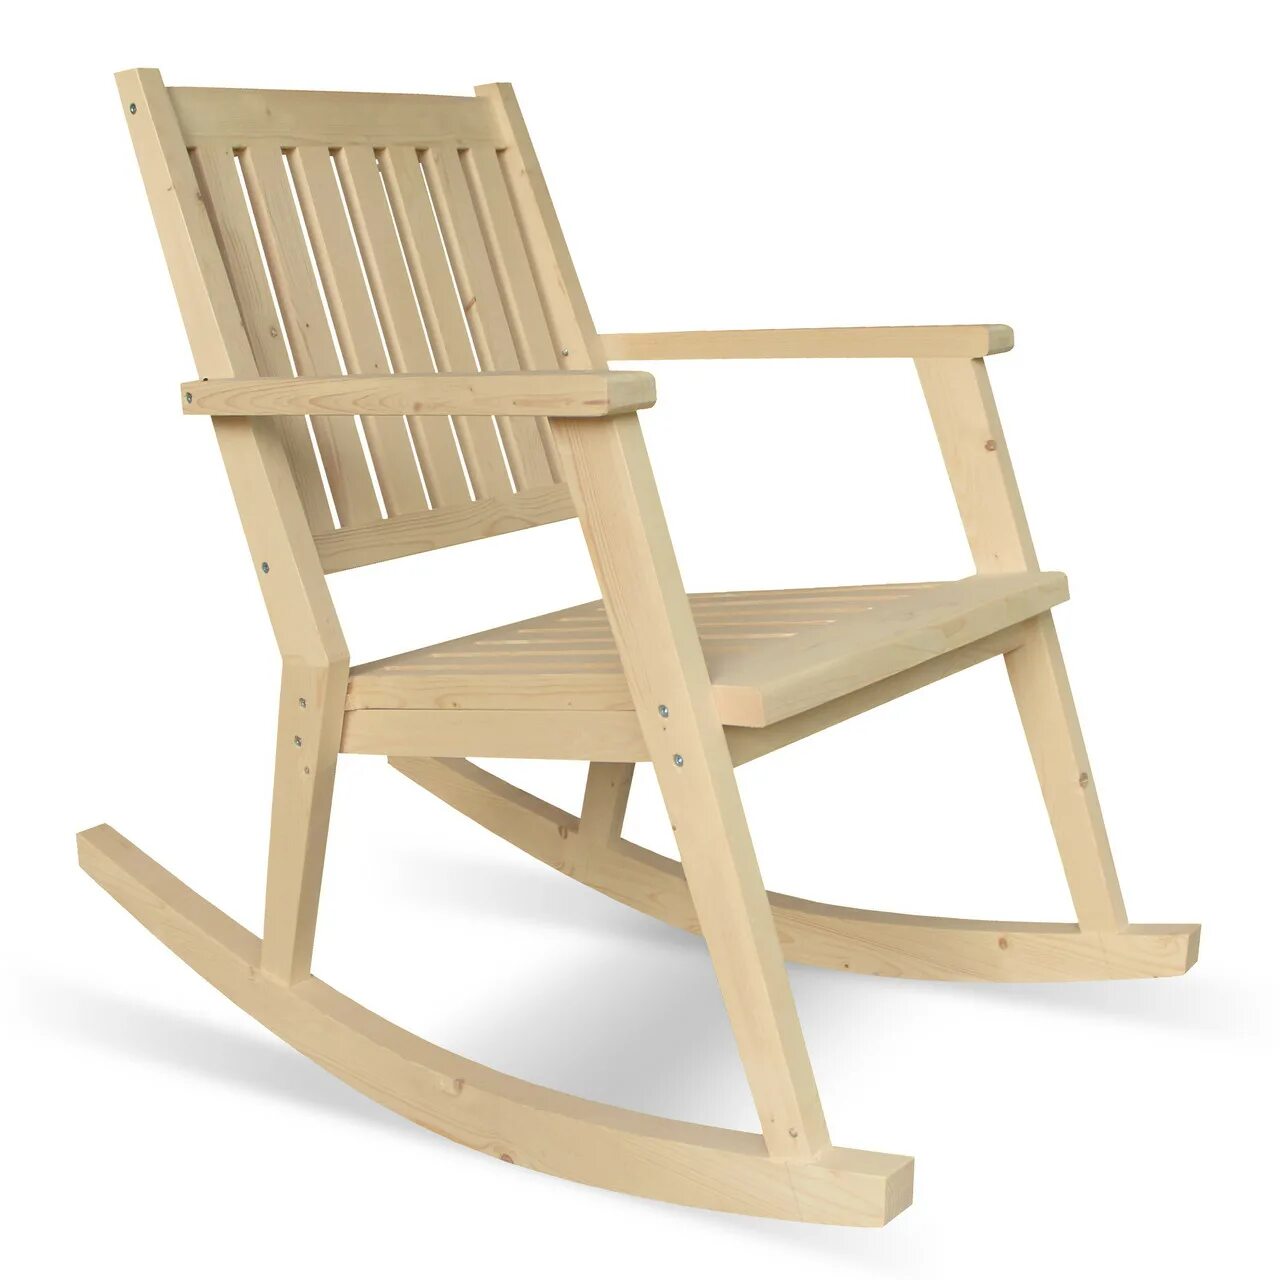 Wooden купить. Кресло качалка Родос. Кресло деревянное. Кресло качалка из дерева. Кресло садовое.